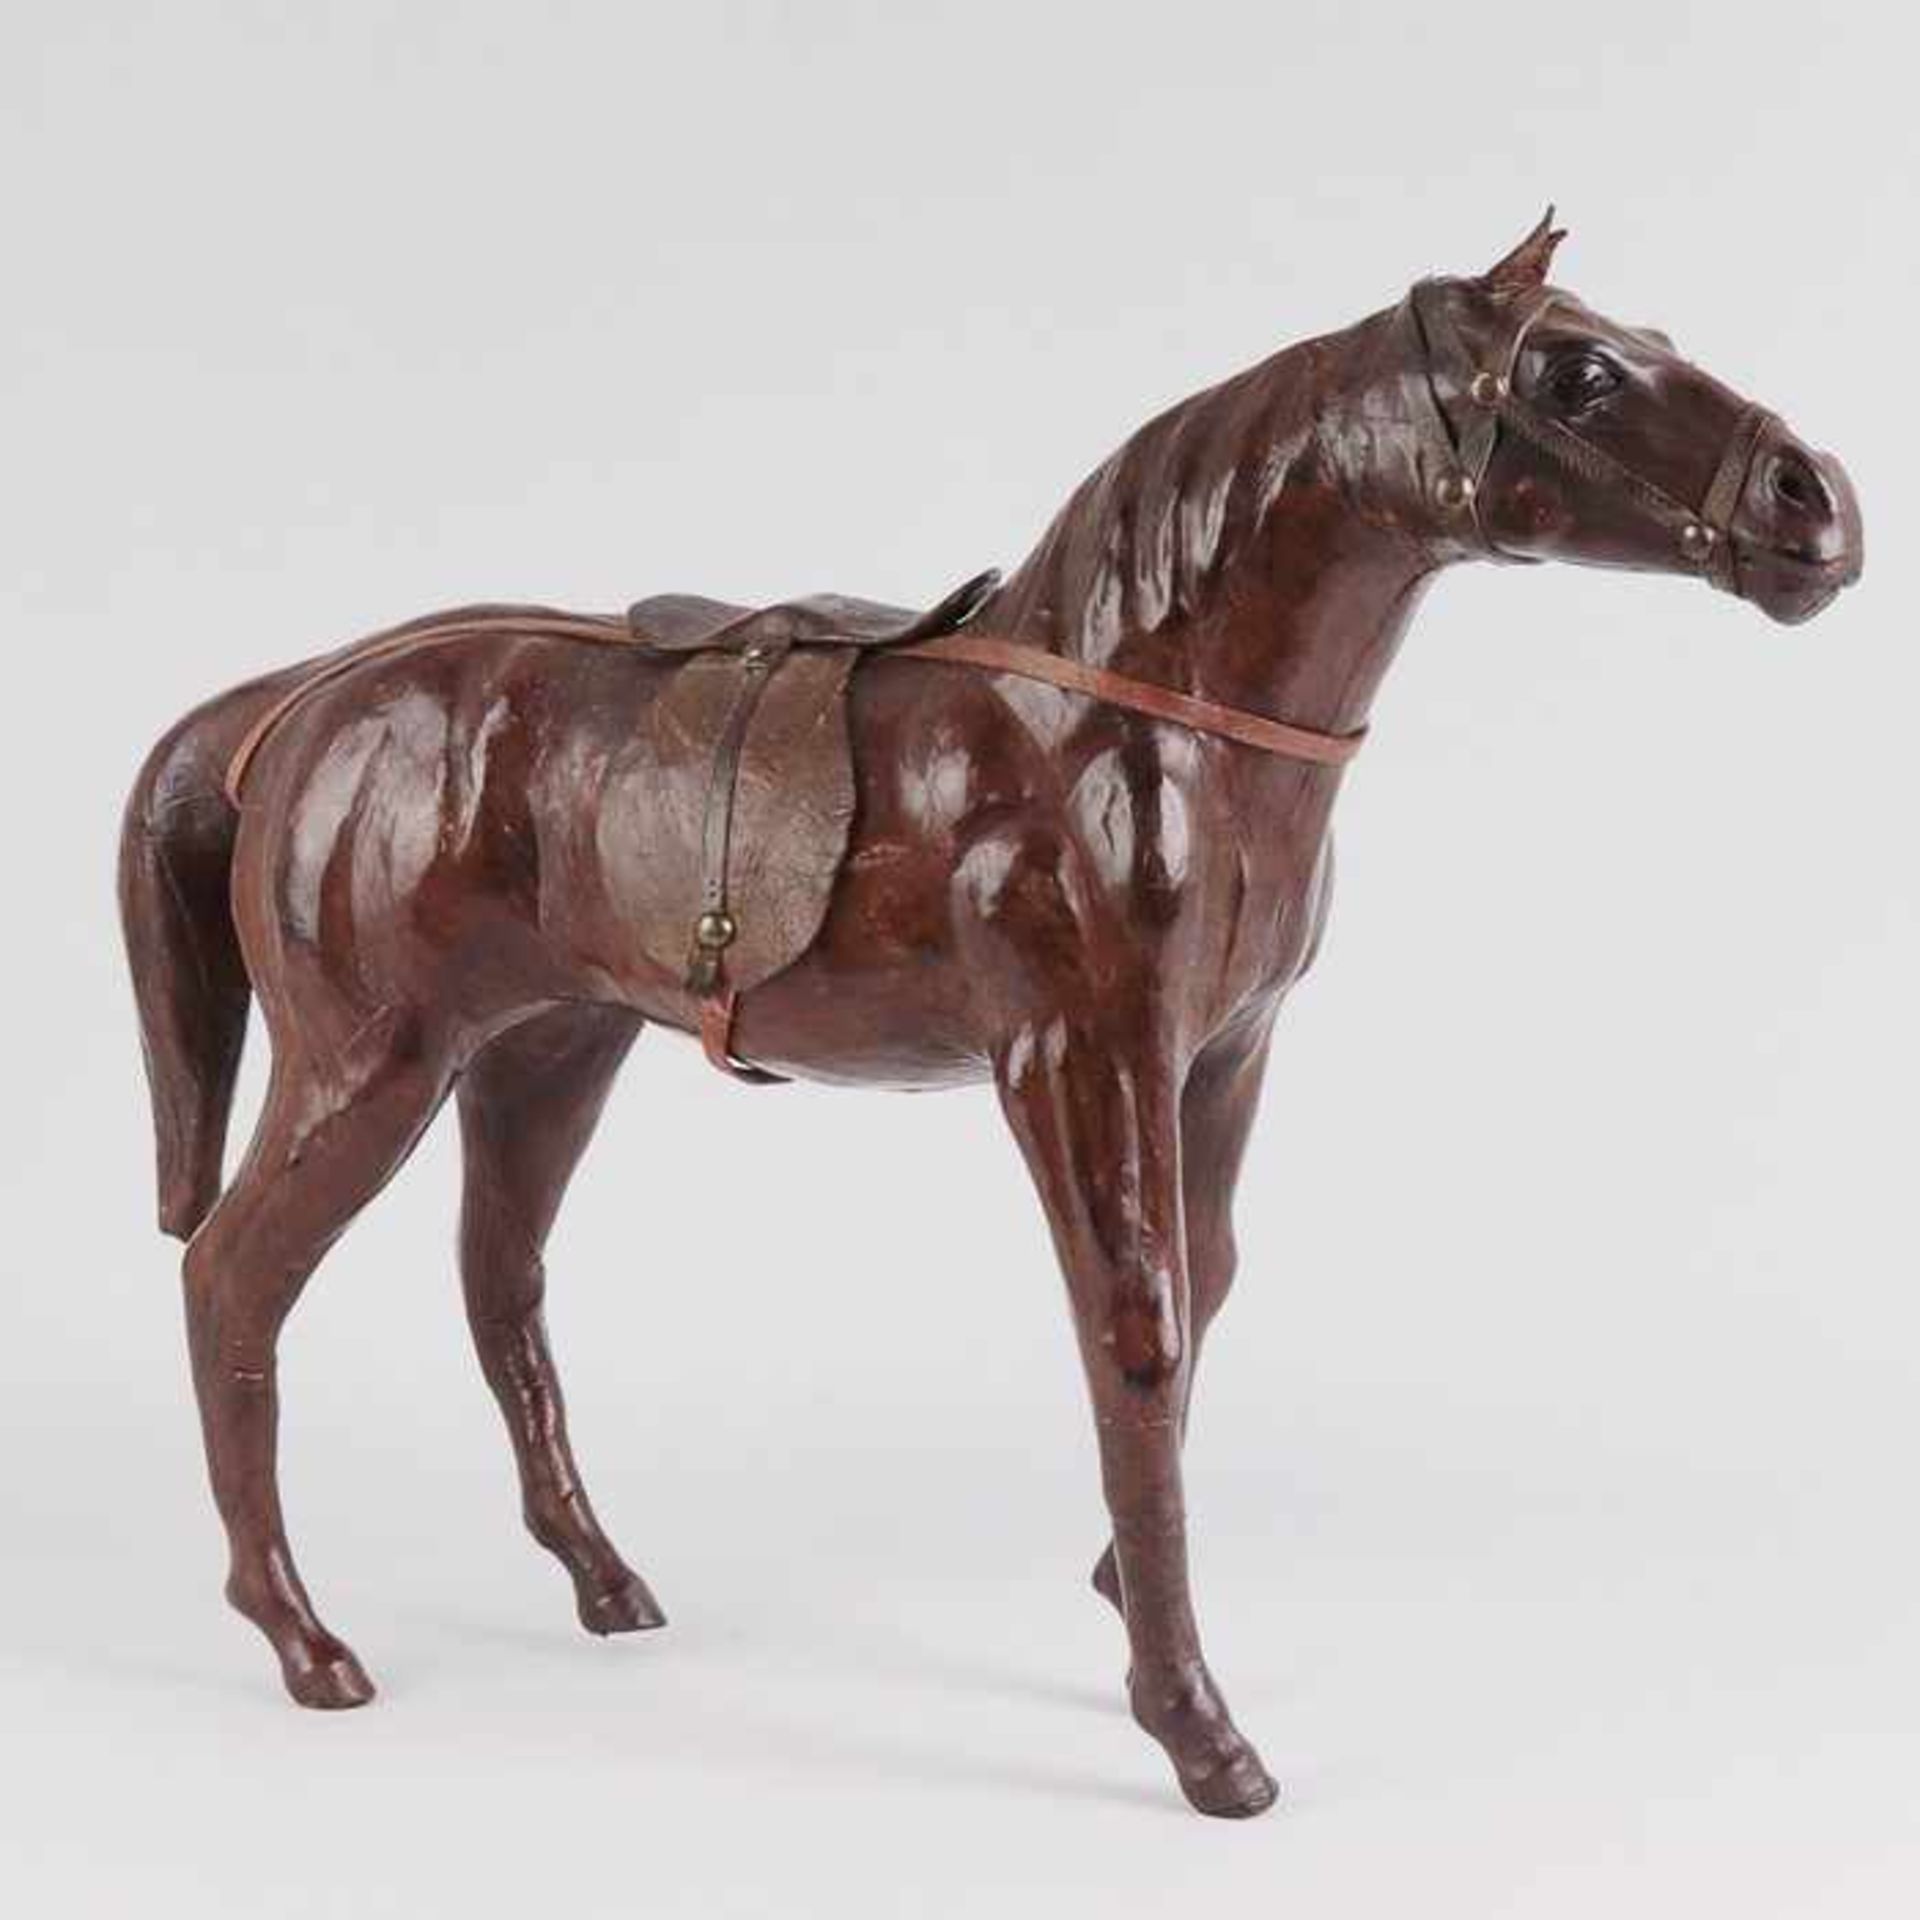 Pferd - Figurvollplast., naturalist. gestaltete Figur eines Pferdes, lederbezogen, Glasaugen, mit